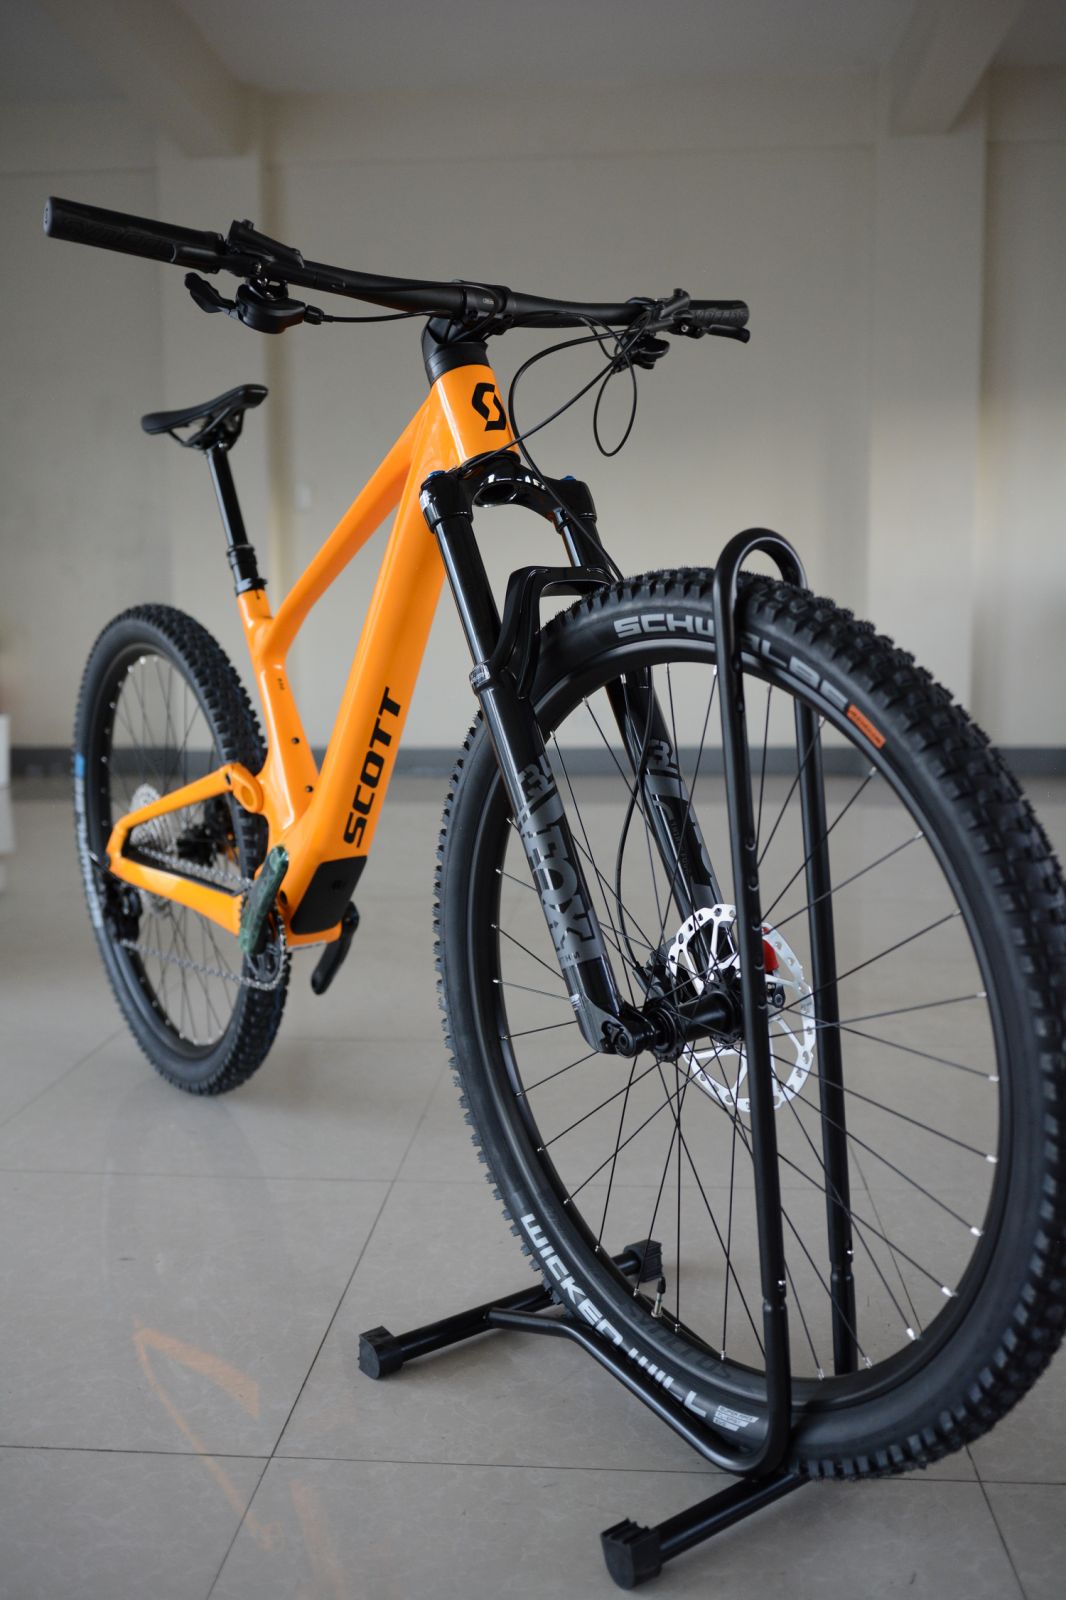 Scott Spark 930 All-Mountain / Trail Bike Carbon-Alloy 29er - Orange